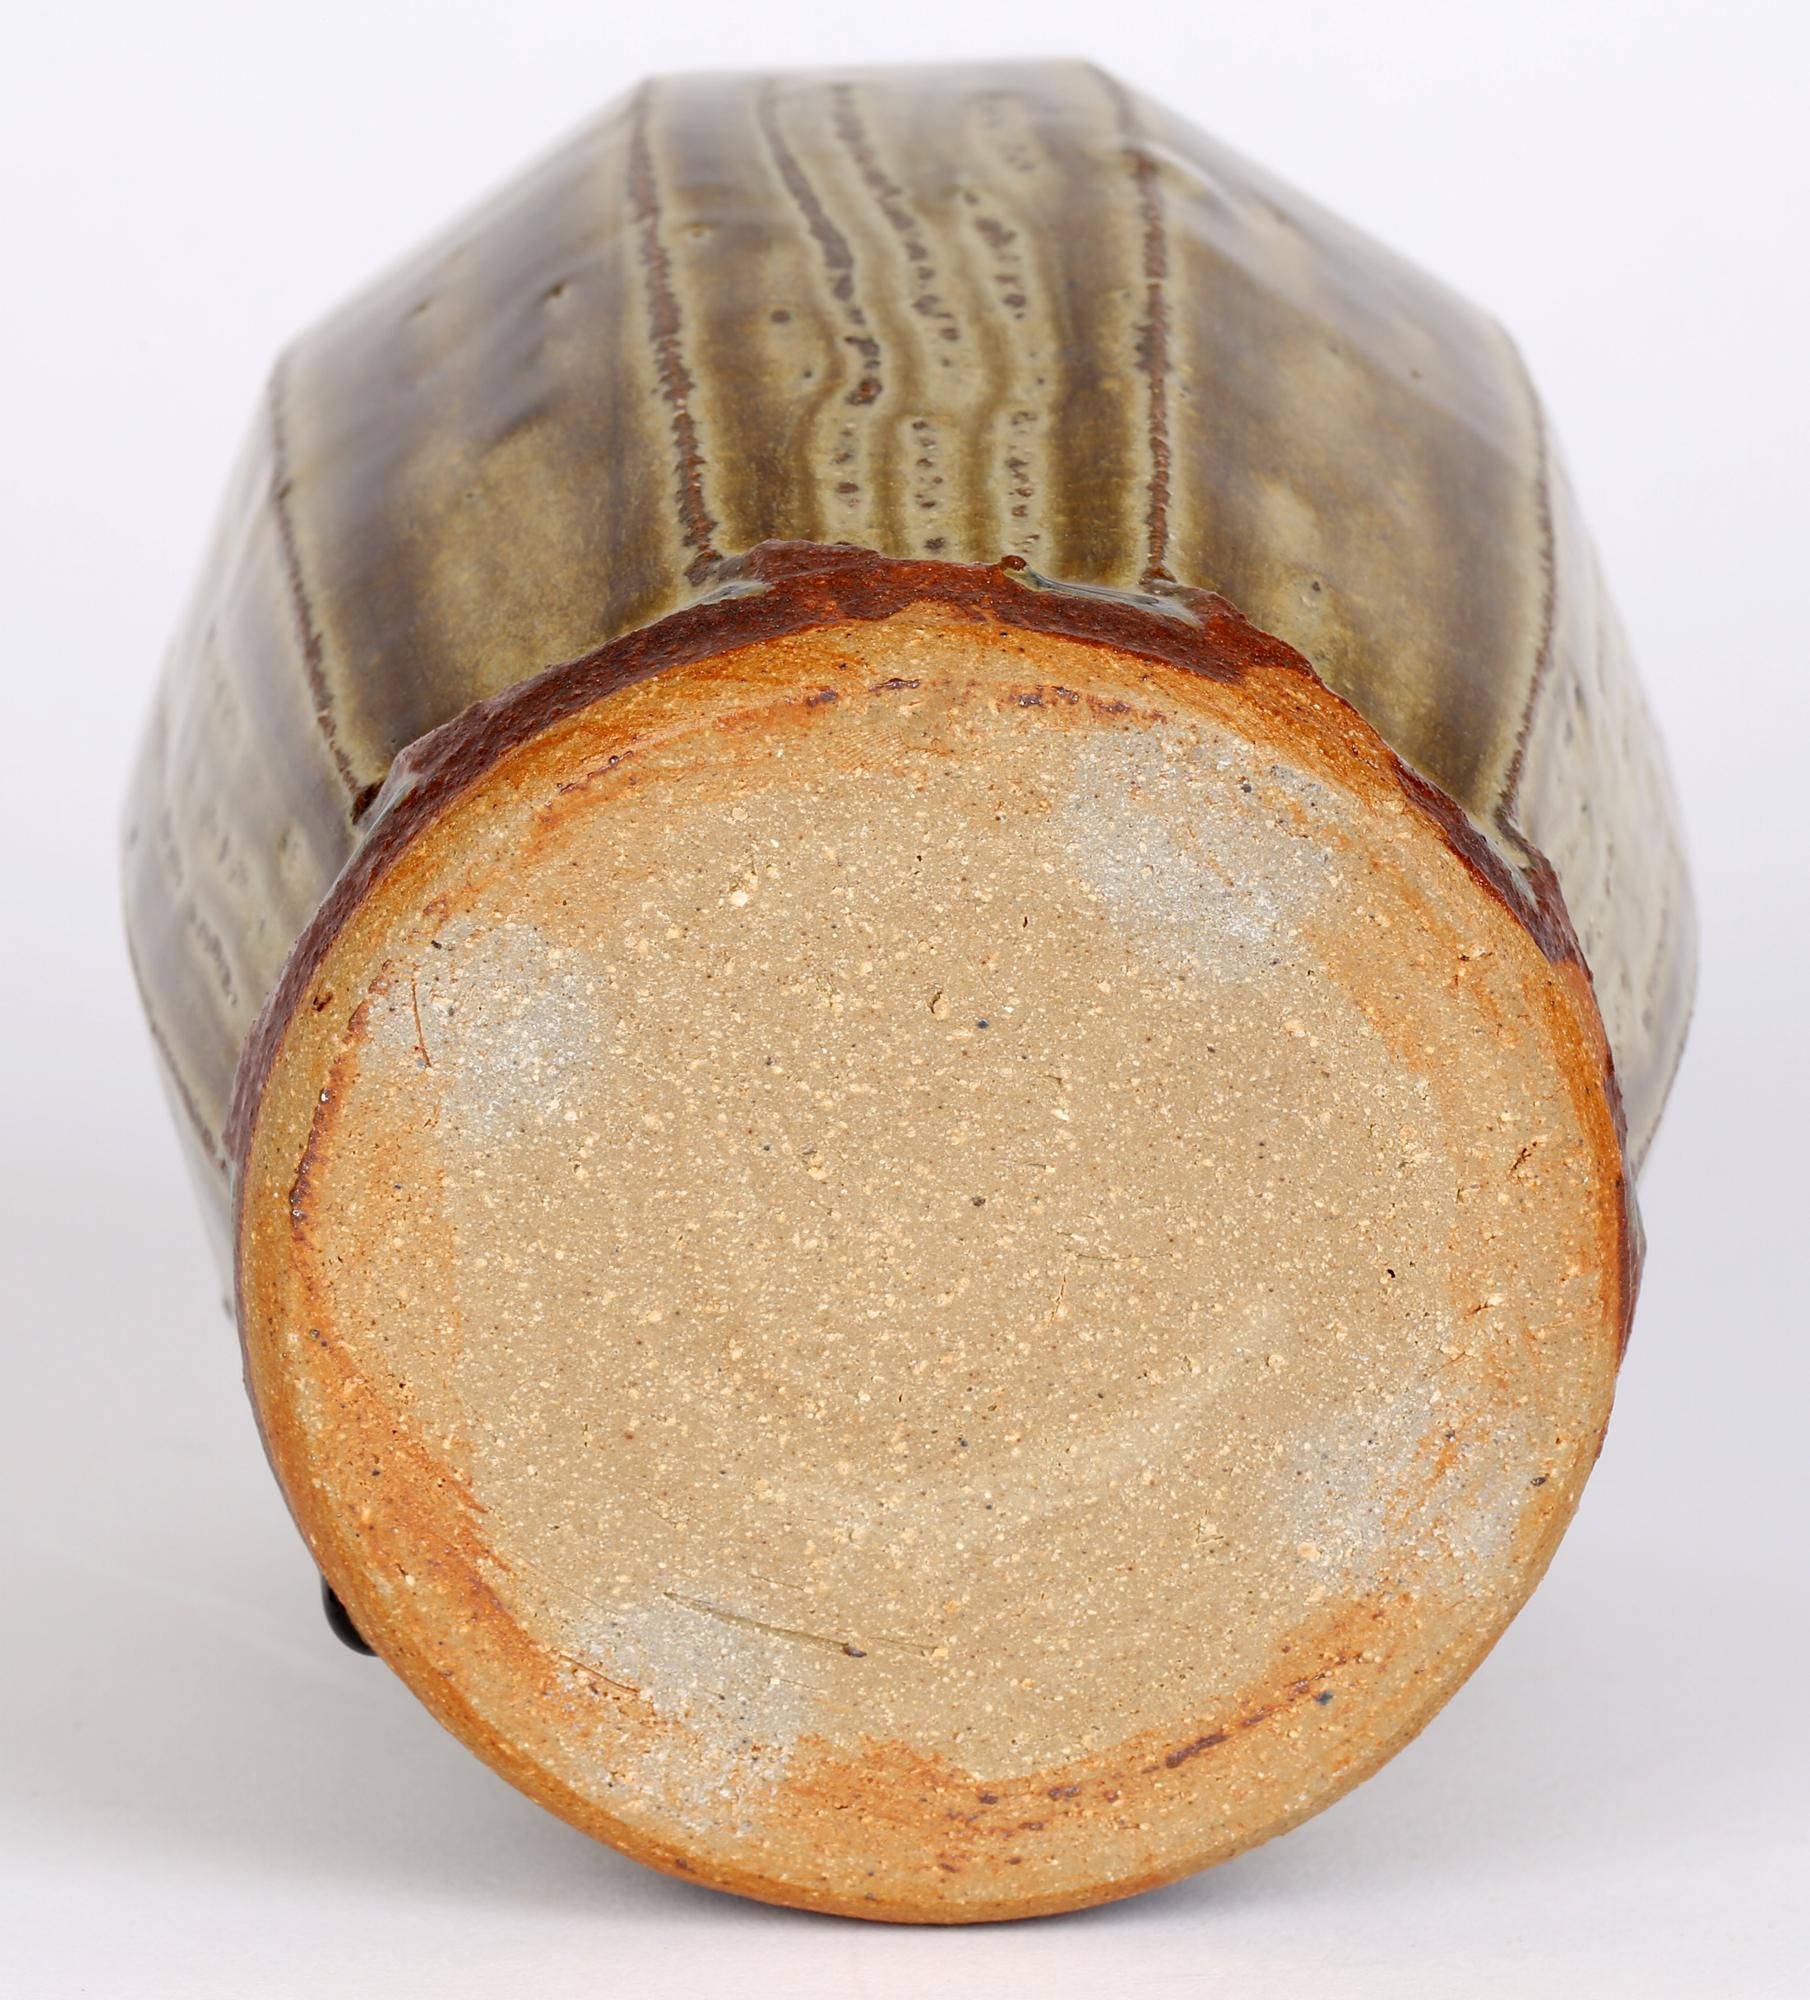 Mike Dodd (Brite, geb. 1943) Studio-Keramikvase mit facettiertem Korpus und grüner Schleppglasur aus dem 20. Jahrhundert. Die Steingutvase steht auf einem unglasierten Fuß mit einem messerscharfen Gratabschluss am unteren Ende jeder Facette, in dem